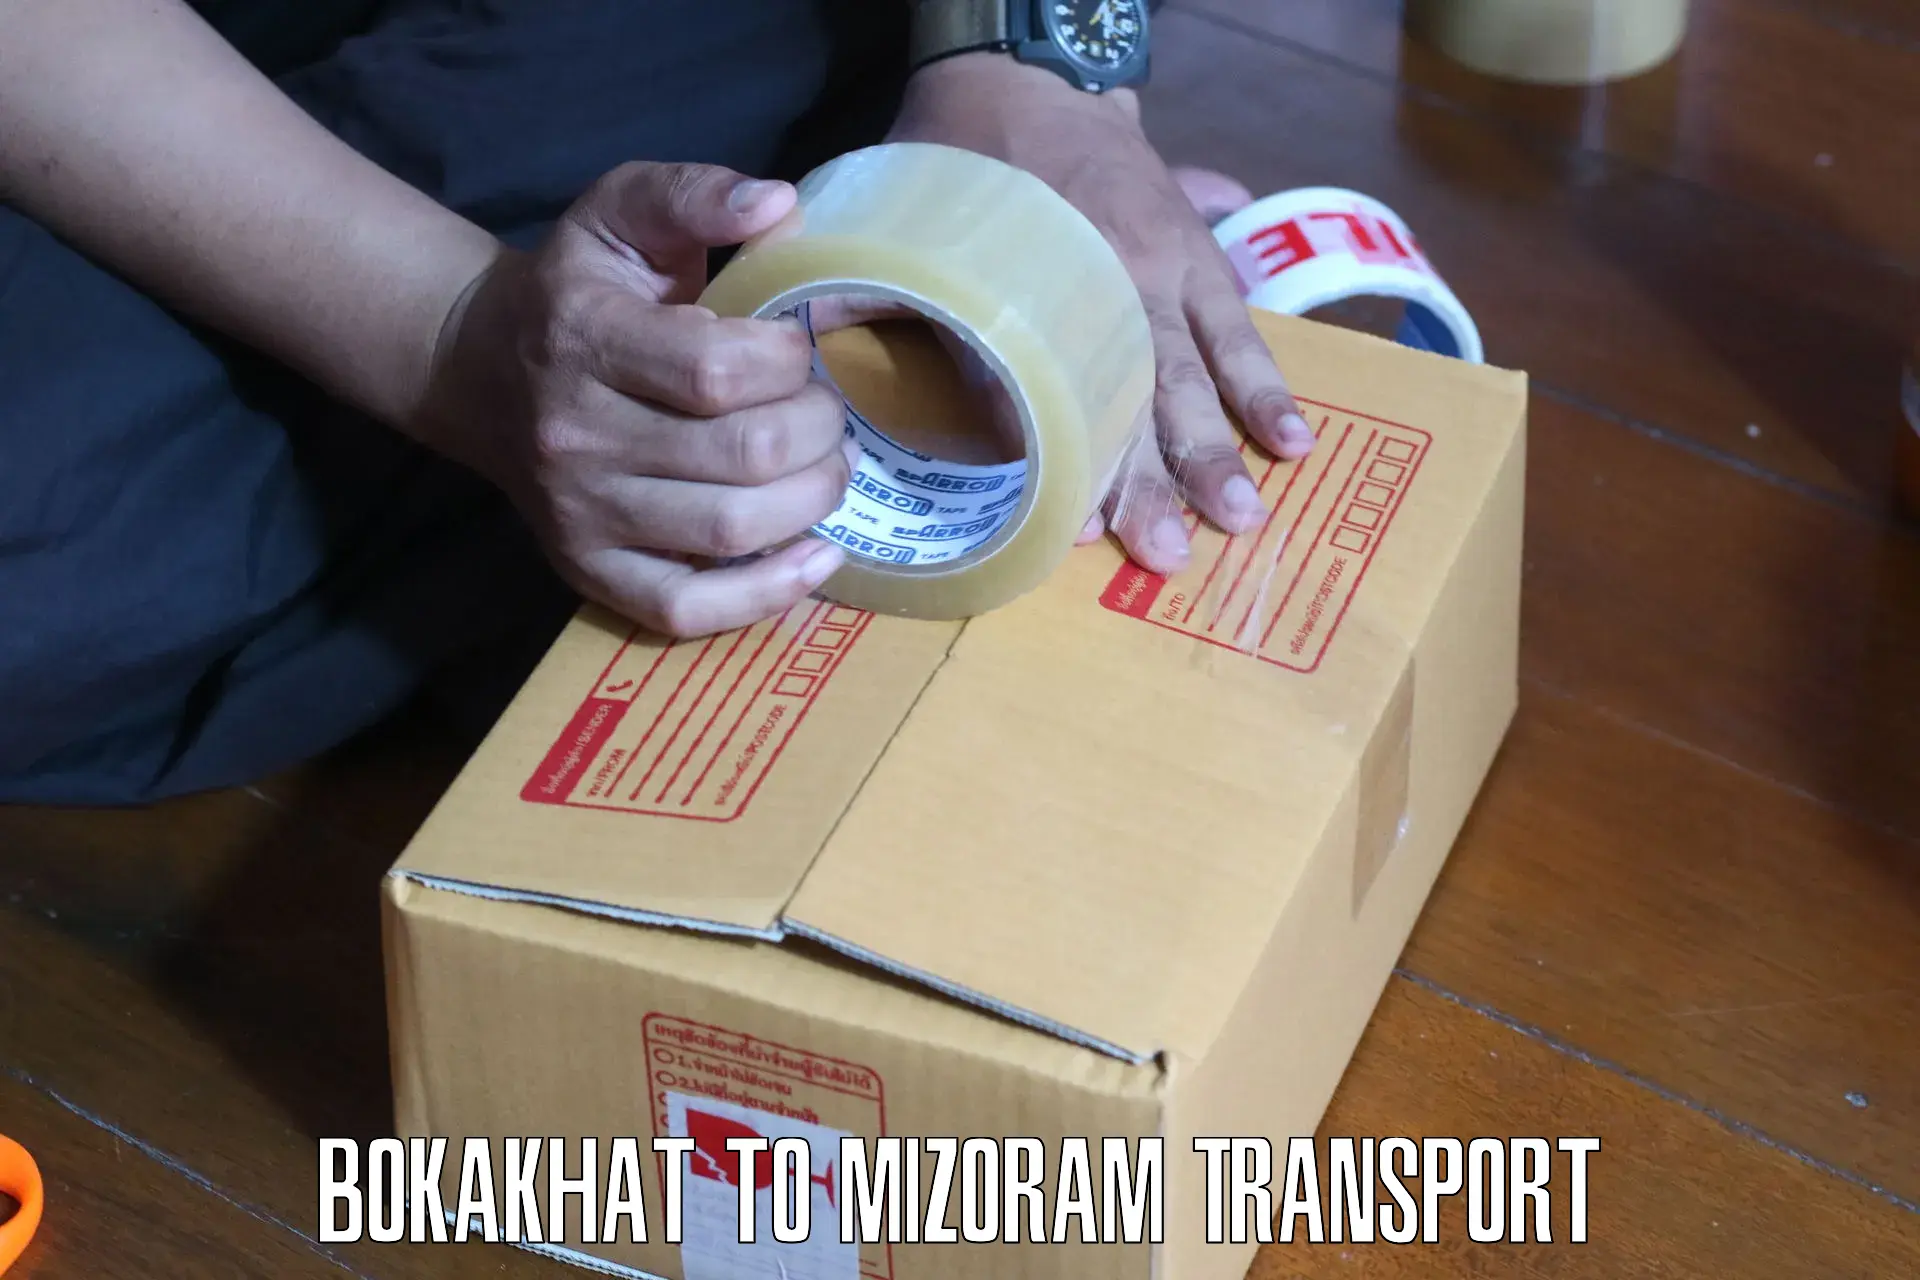 Furniture transport service Bokakhat to Darlawn